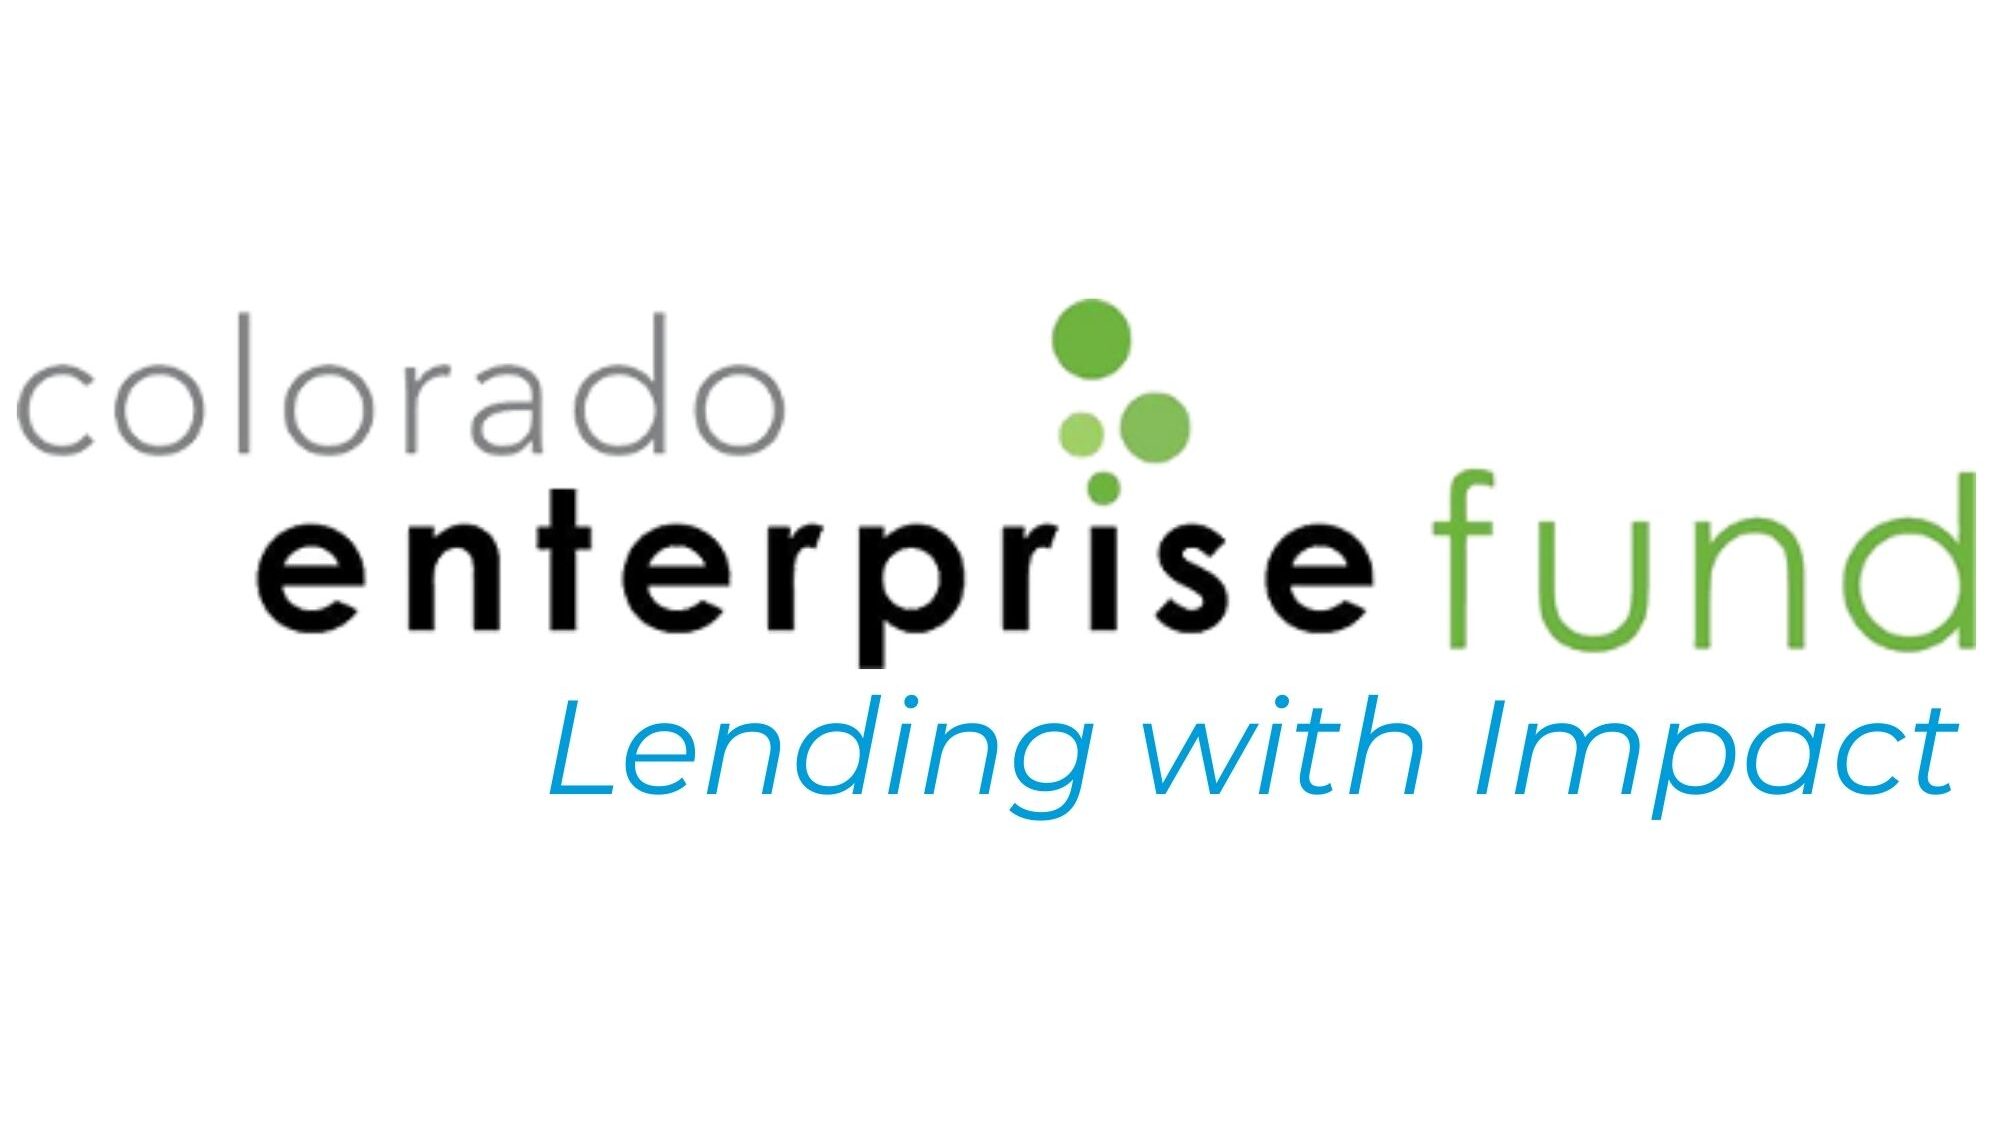 Colorado Enterprise Fund